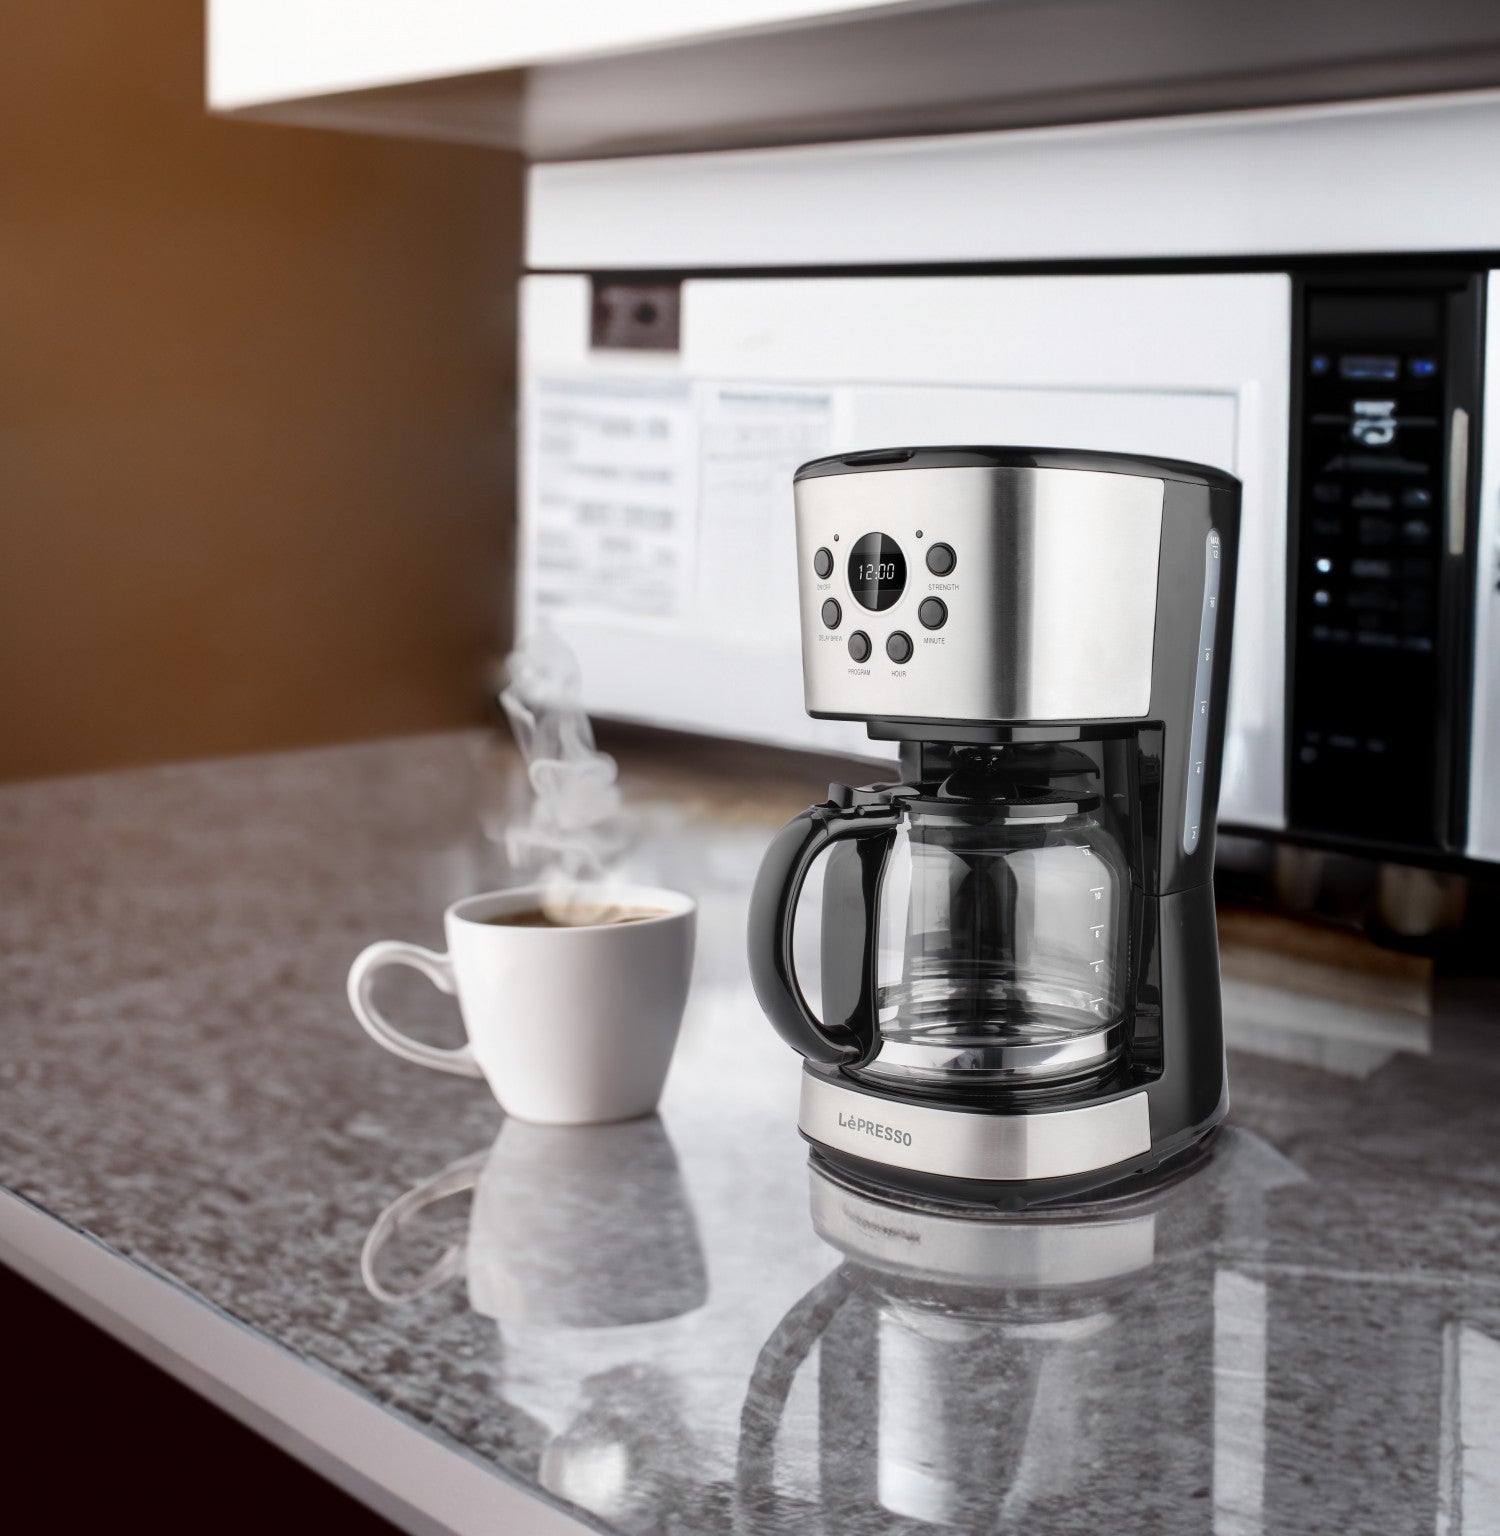 ماكينة صنع القهوة الرقمية بالتنقيط من ليبرسو مع وظائف ذكية سعة 1.5 لتر وقوة 900 وات- أسود